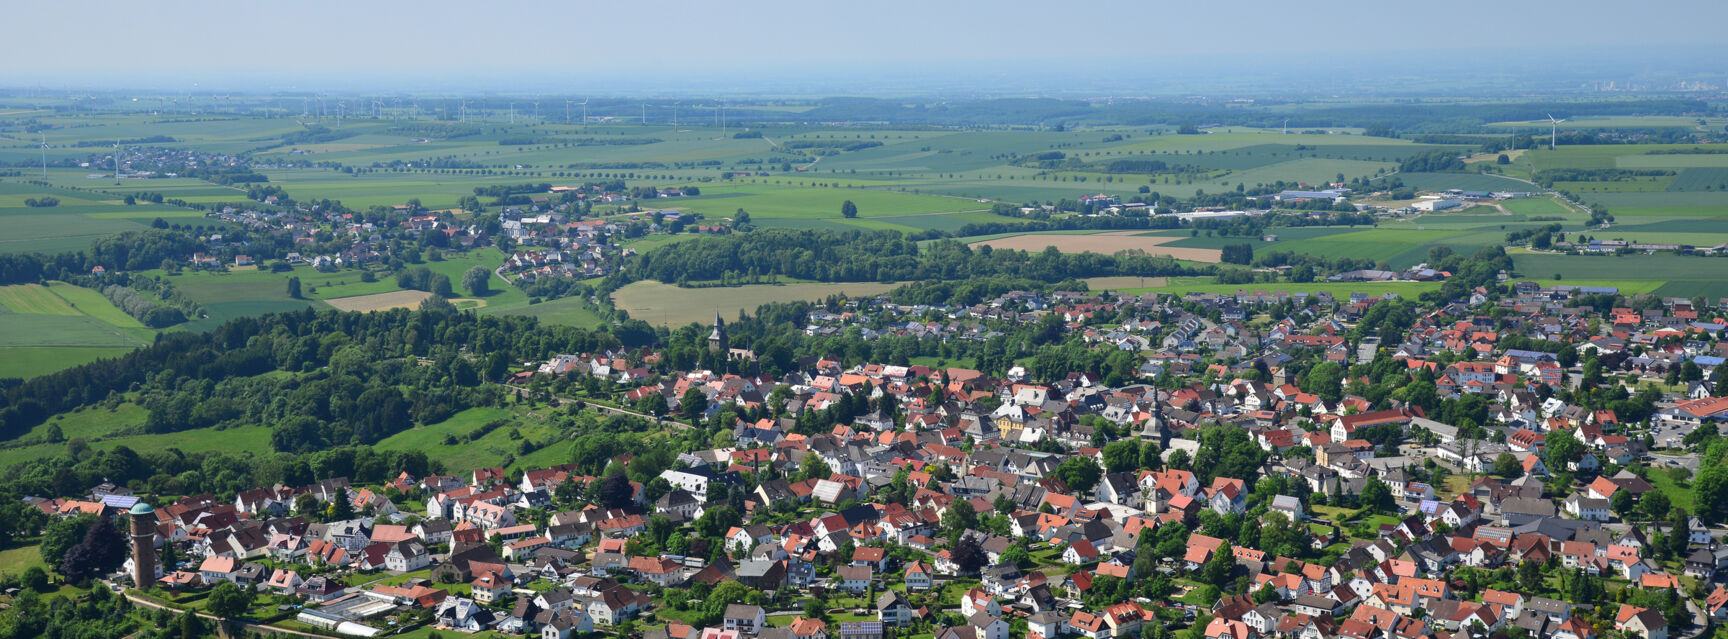 Startbild Rüthen Luftbild mit Wasserturm 